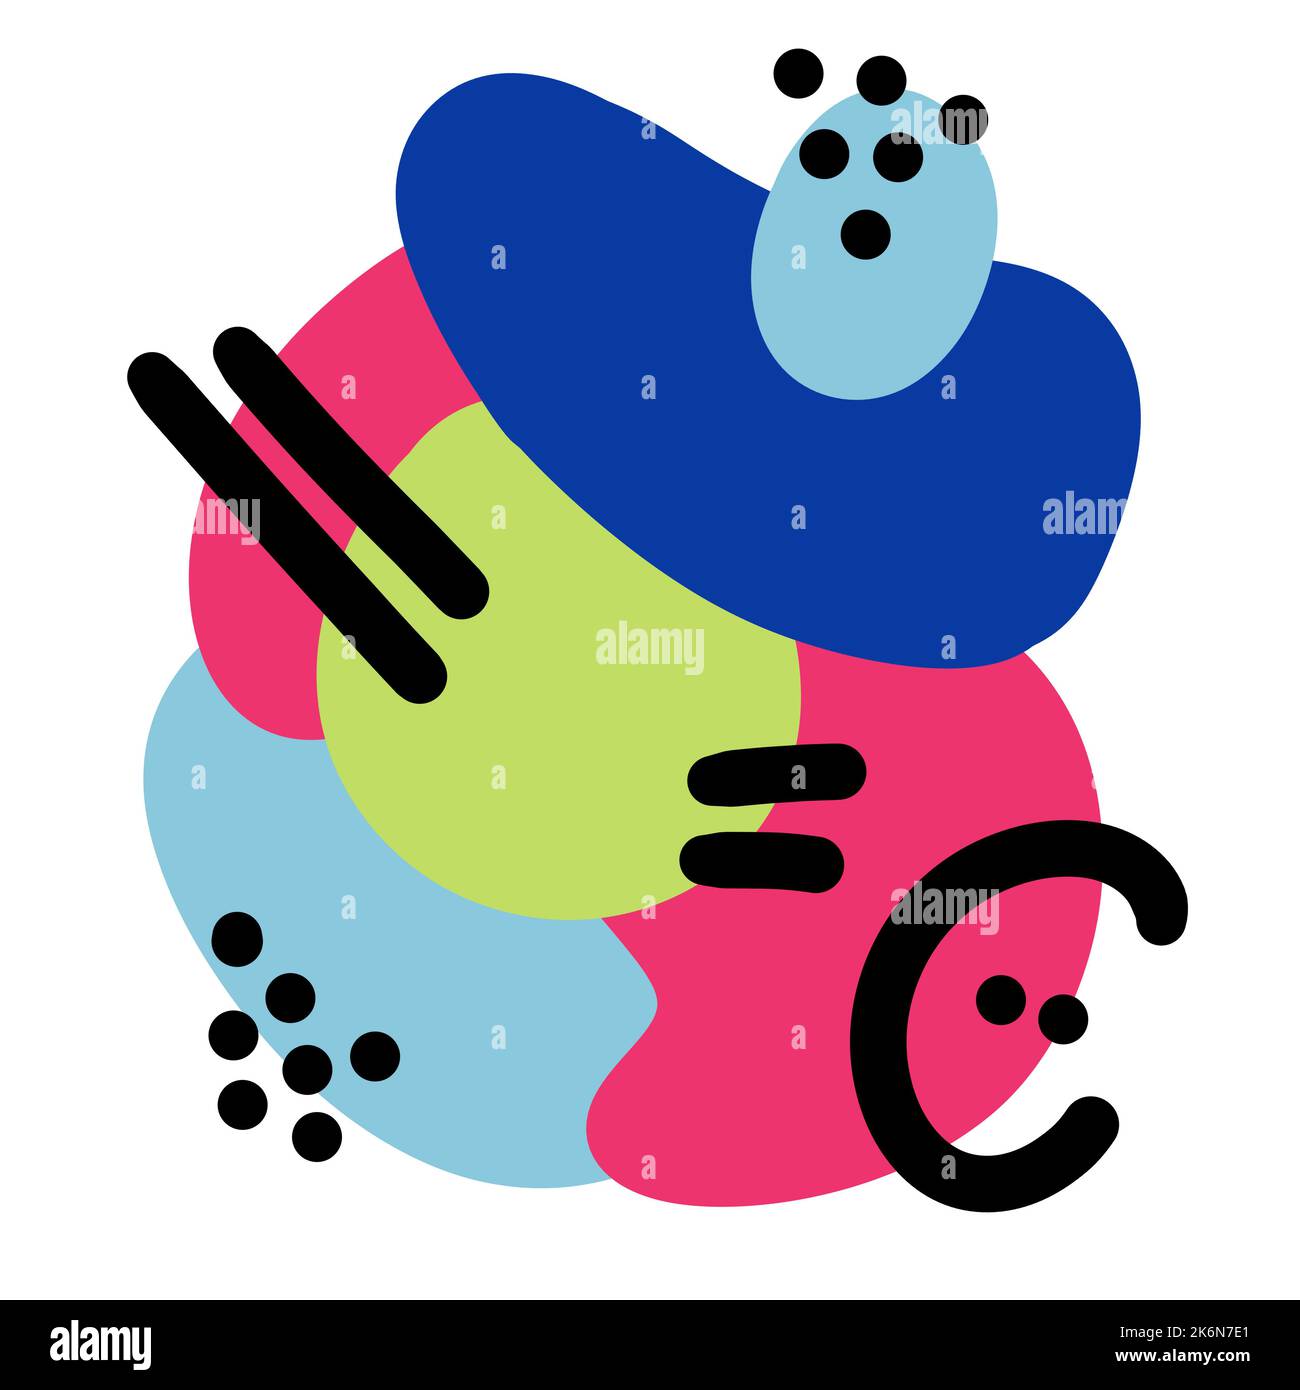 Handgezeichnete Illustration mit abstrakten modernen Formen. Helle lebendige geometrische Blobs Kreise mit schwarzen Punkten Linien Kurven, blau lila grün rosa Grafik-Design-Poster, Doodle Hintergrund für Social Media Stockfoto